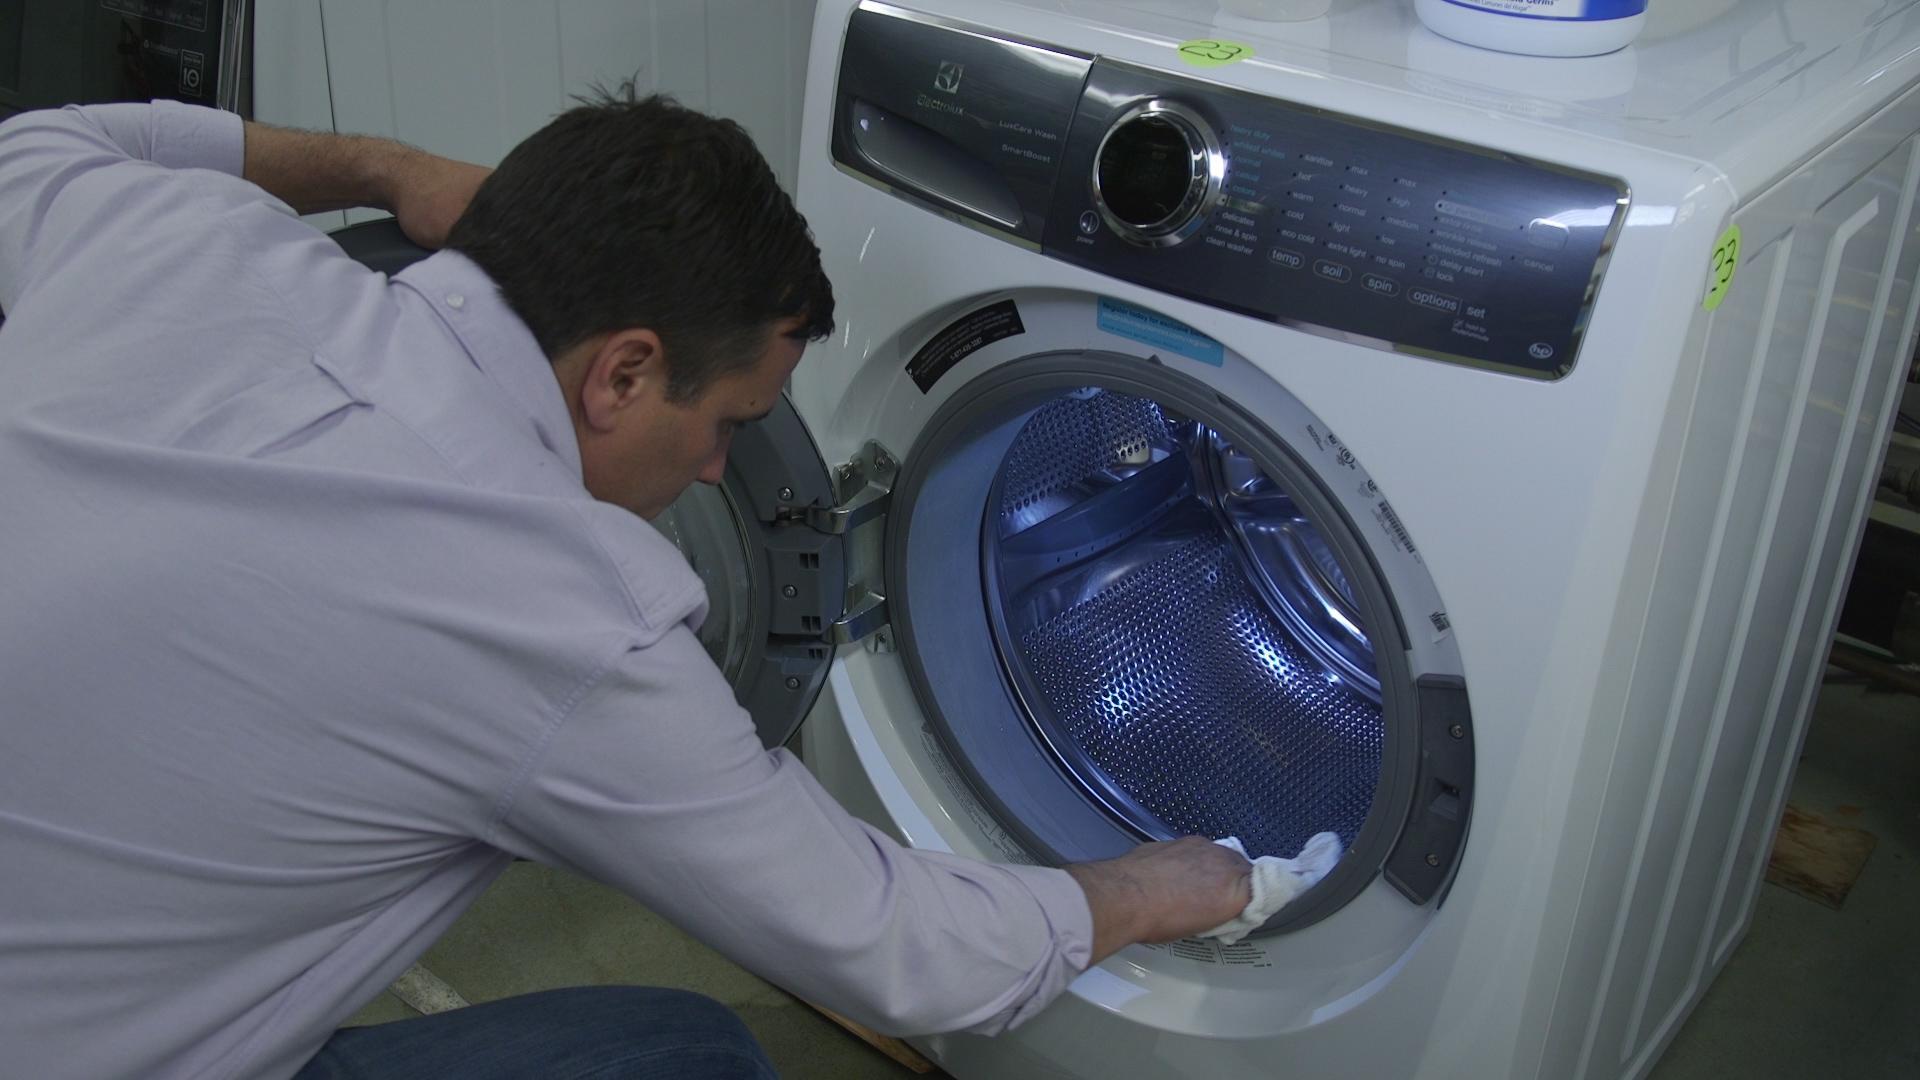 Cómo limpiar tu lavadora - Consumer